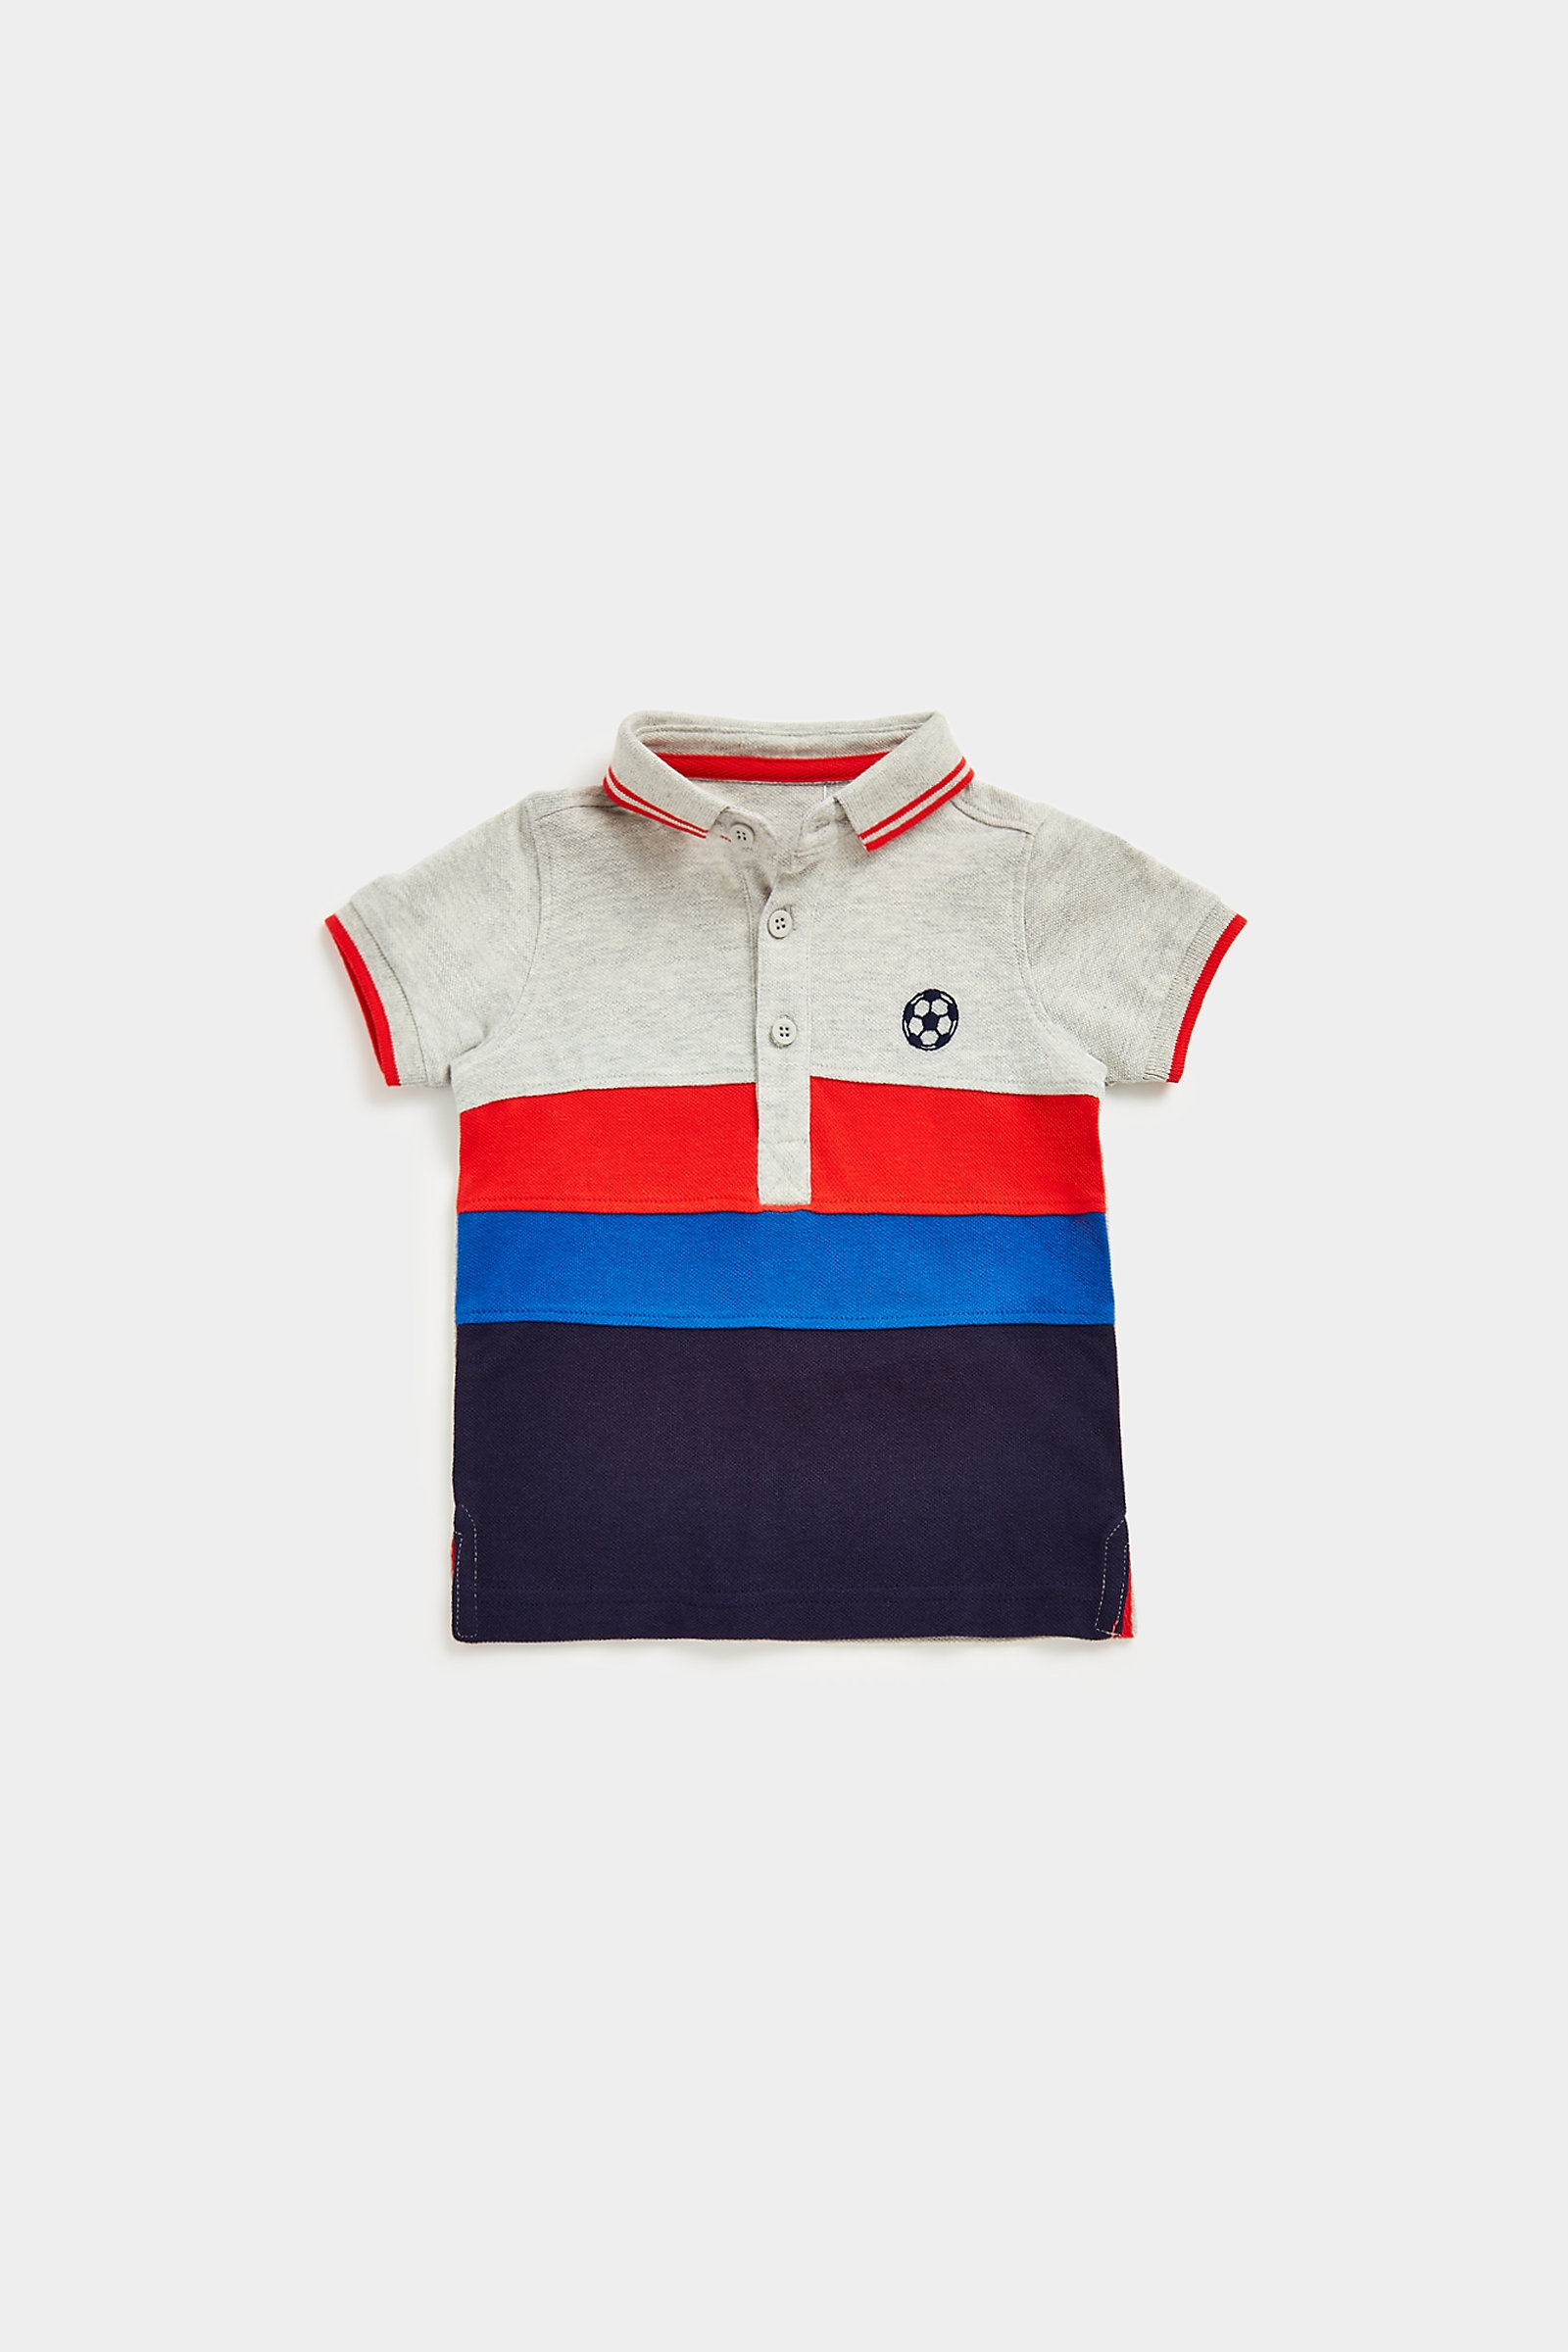 Mothercare Boys Short Sleeve Sports design Polo -Multicolour